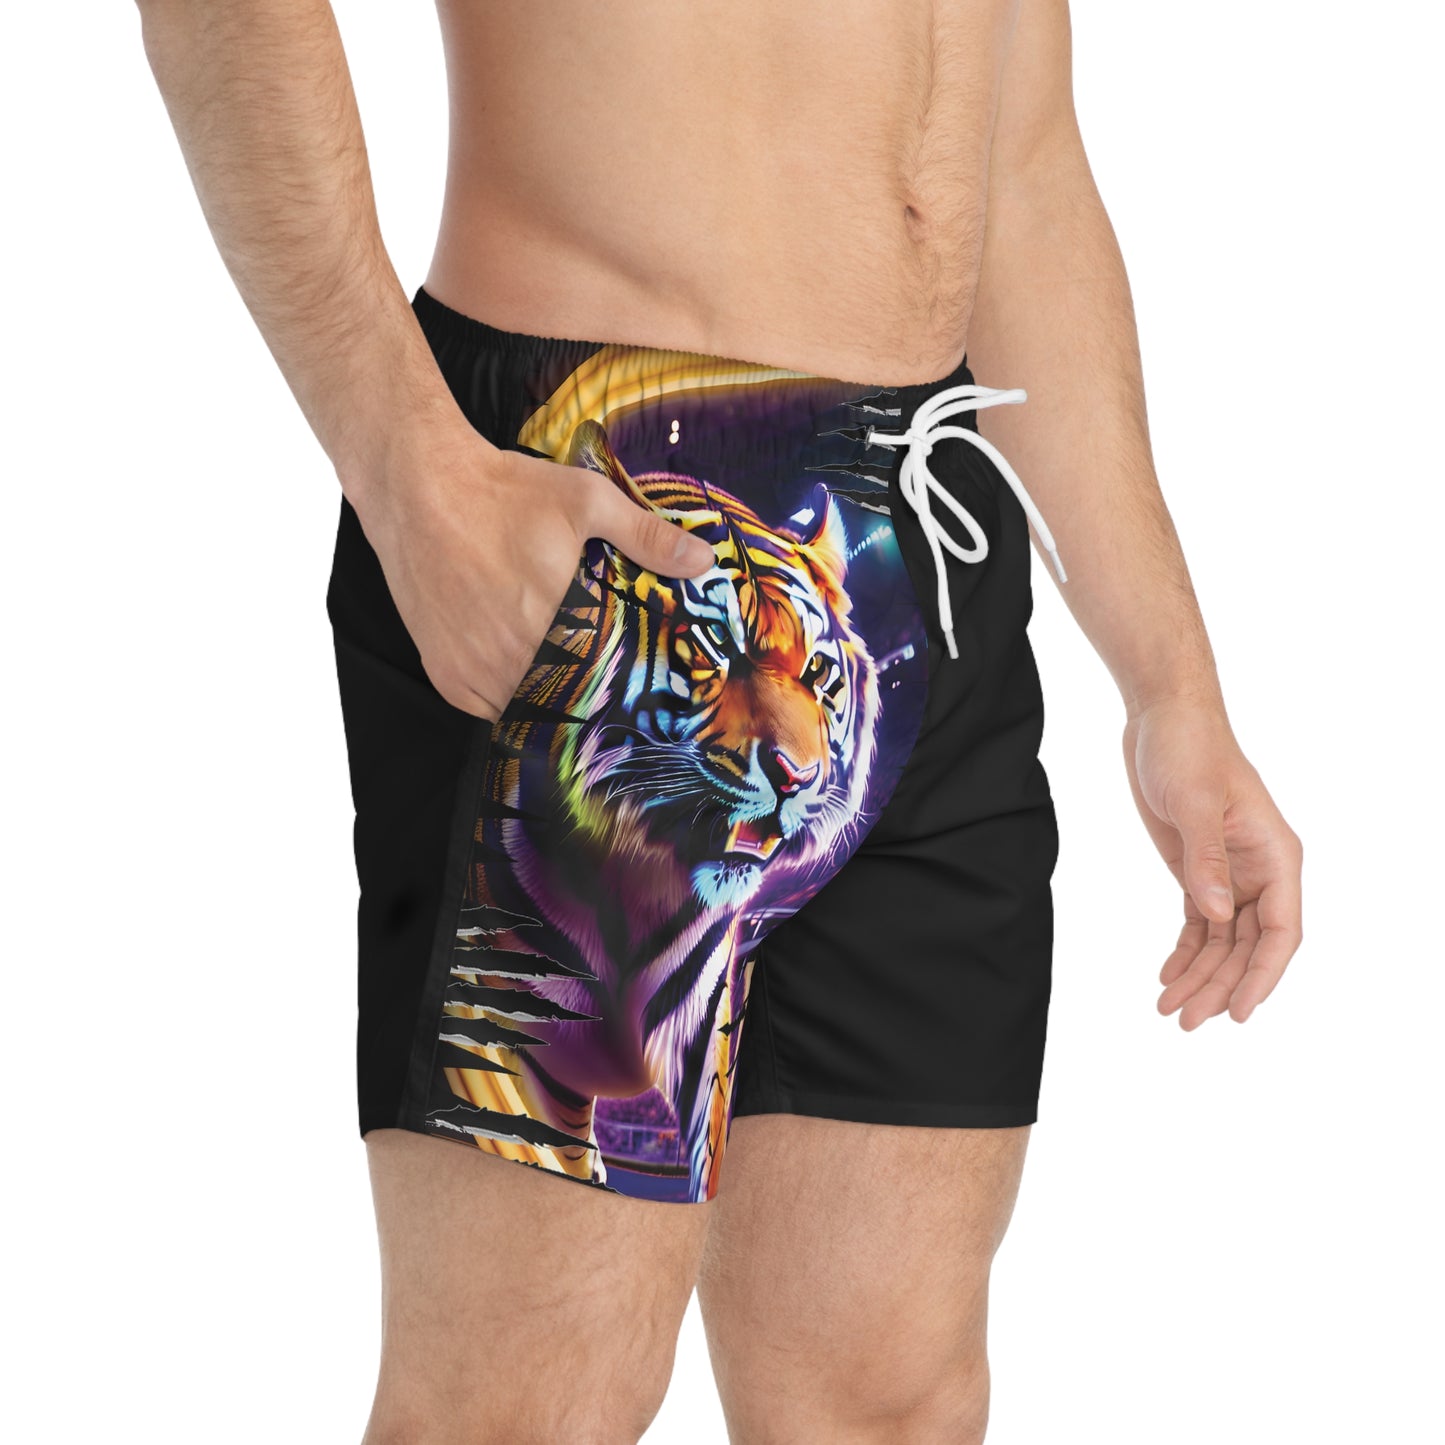 Tiger Swim Trunks - Men's Swim Trunks in Vibrant Purple & Gold Colors